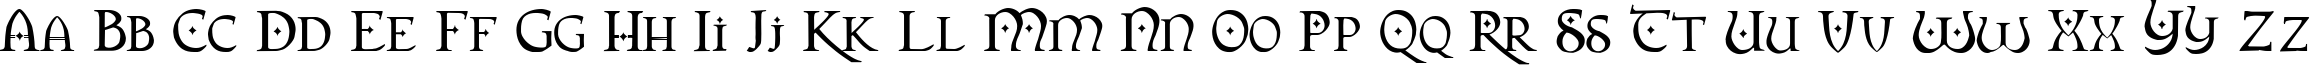 Пример написания английского алфавита шрифтом Orpheus